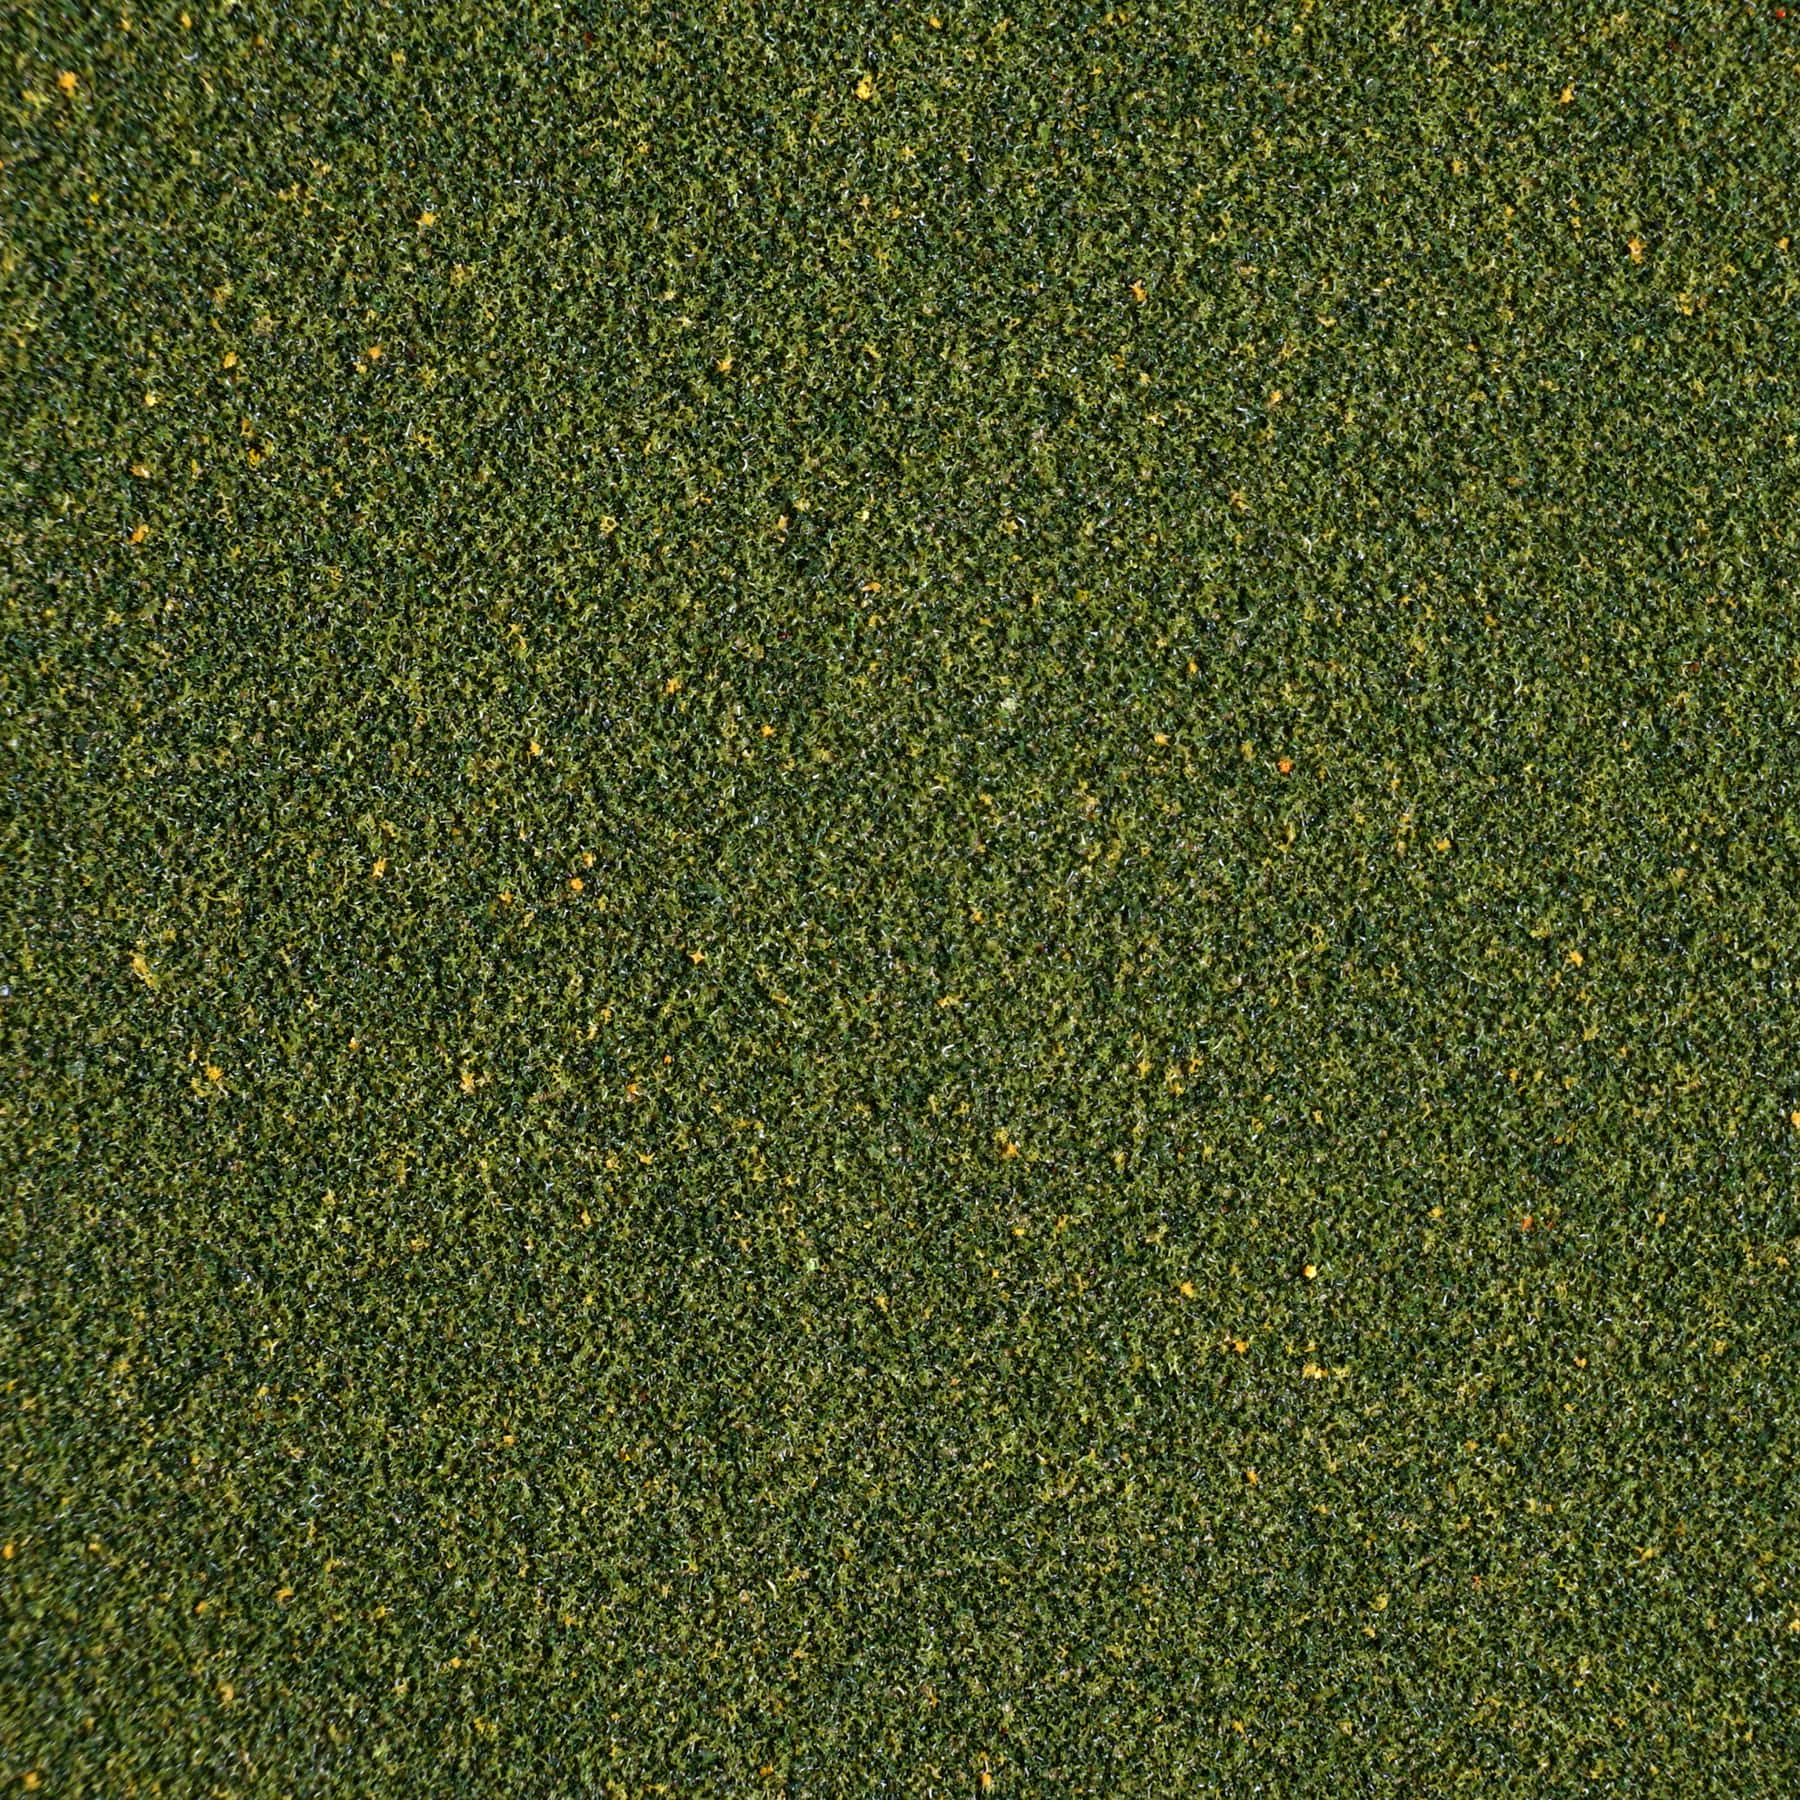 8 Pack: Mini Green Grass Mat by Make Market&#xAE;